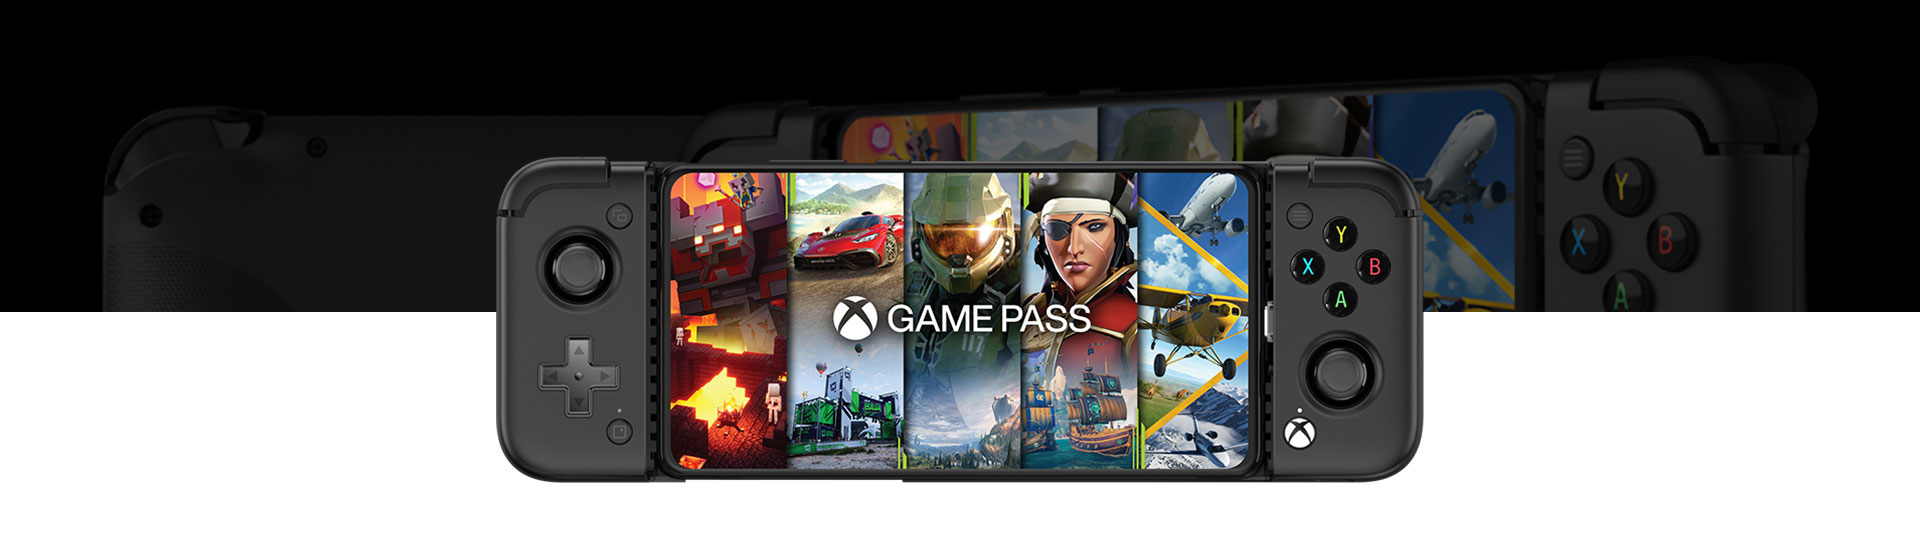 Vista frontal del Control de juego GameSir X2 Pro Mobile con Game Pass en la pantalla